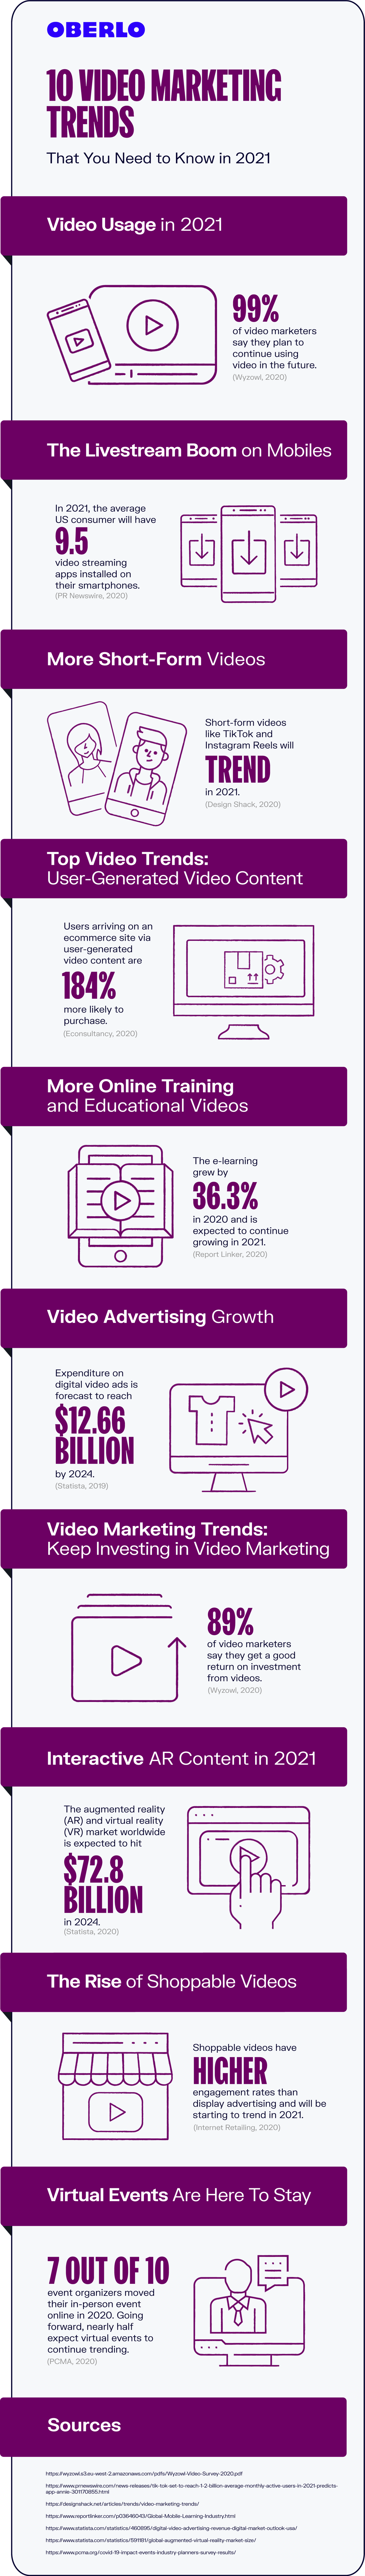 tendencias de video marketing 2021